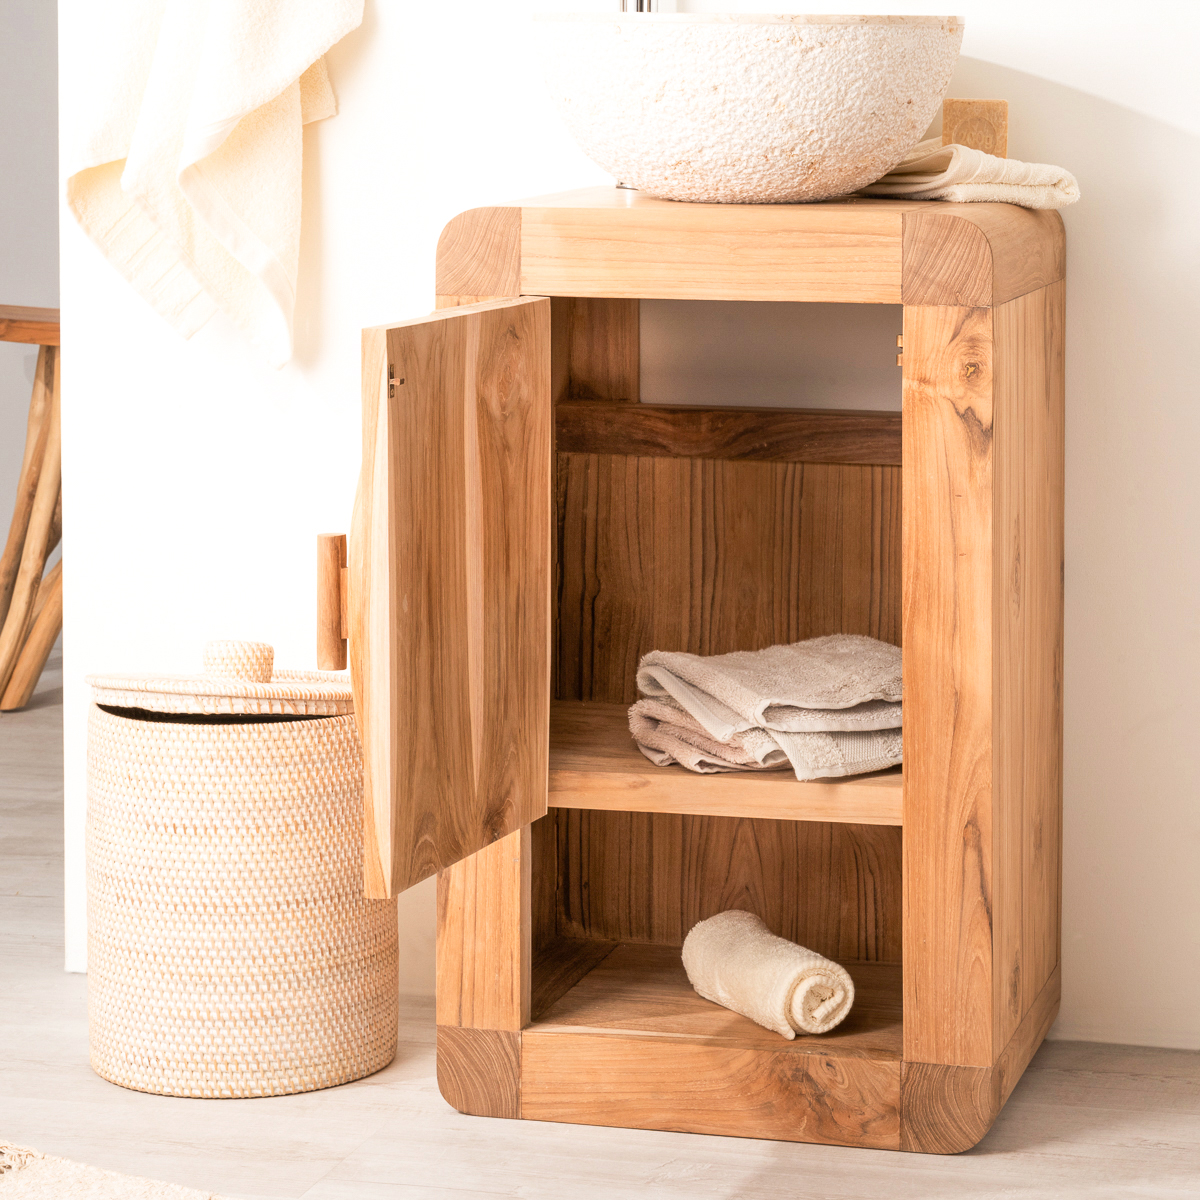 Petit meuble pour les WC par Jeff DesignBois sur L'Air du Bois